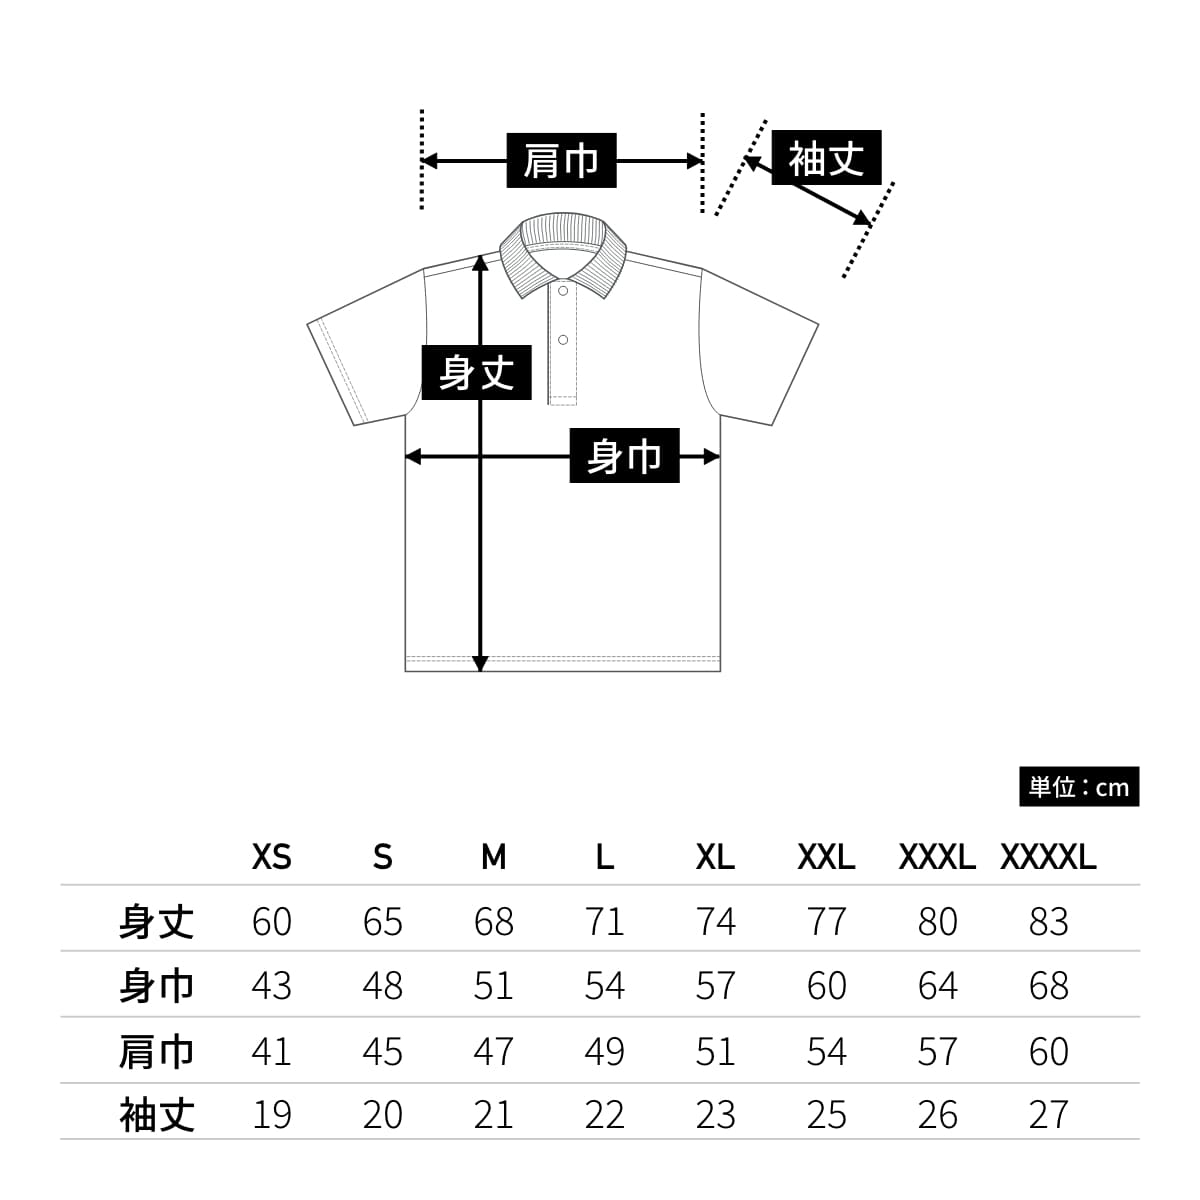 4.1オンス ドライアスレチック ポロシャツ | ビッグサイズ | 1枚 | 5910-01 | ホワイト